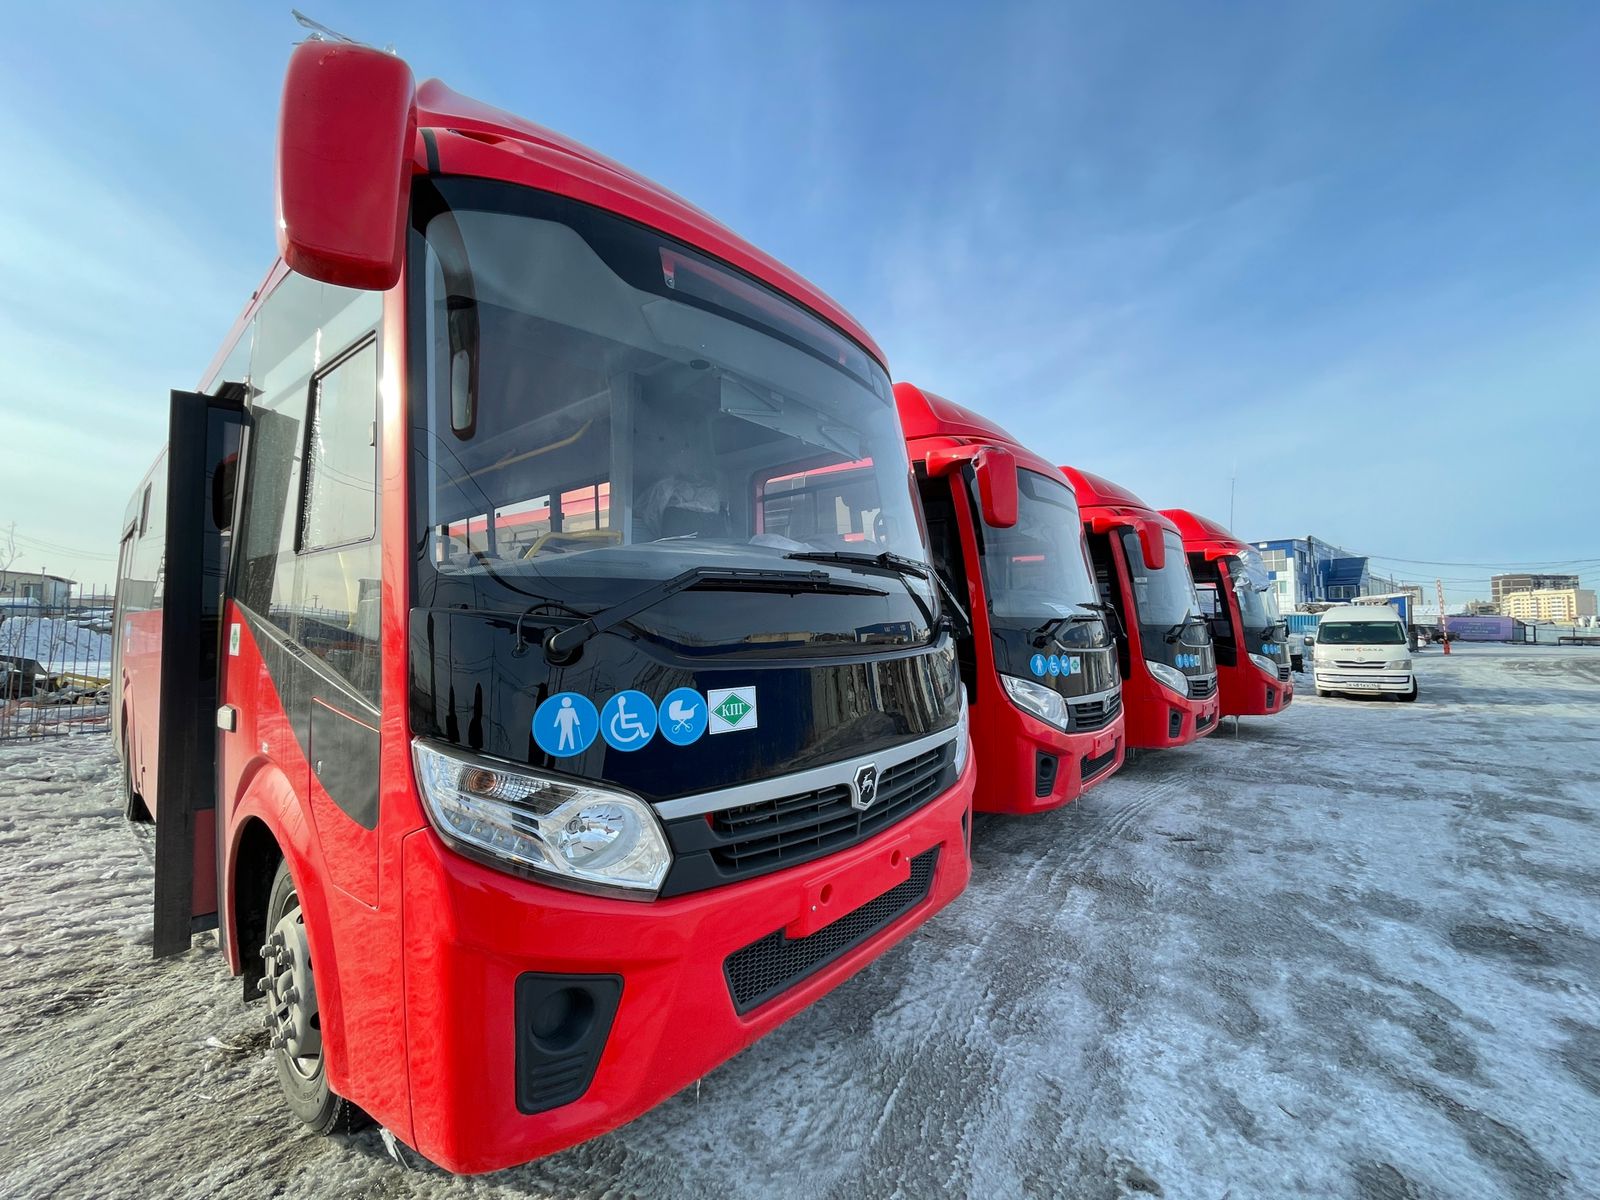 Еще одна партия из 20 красных автобусов типа КАВЗ прибыла в Якутск ⠀